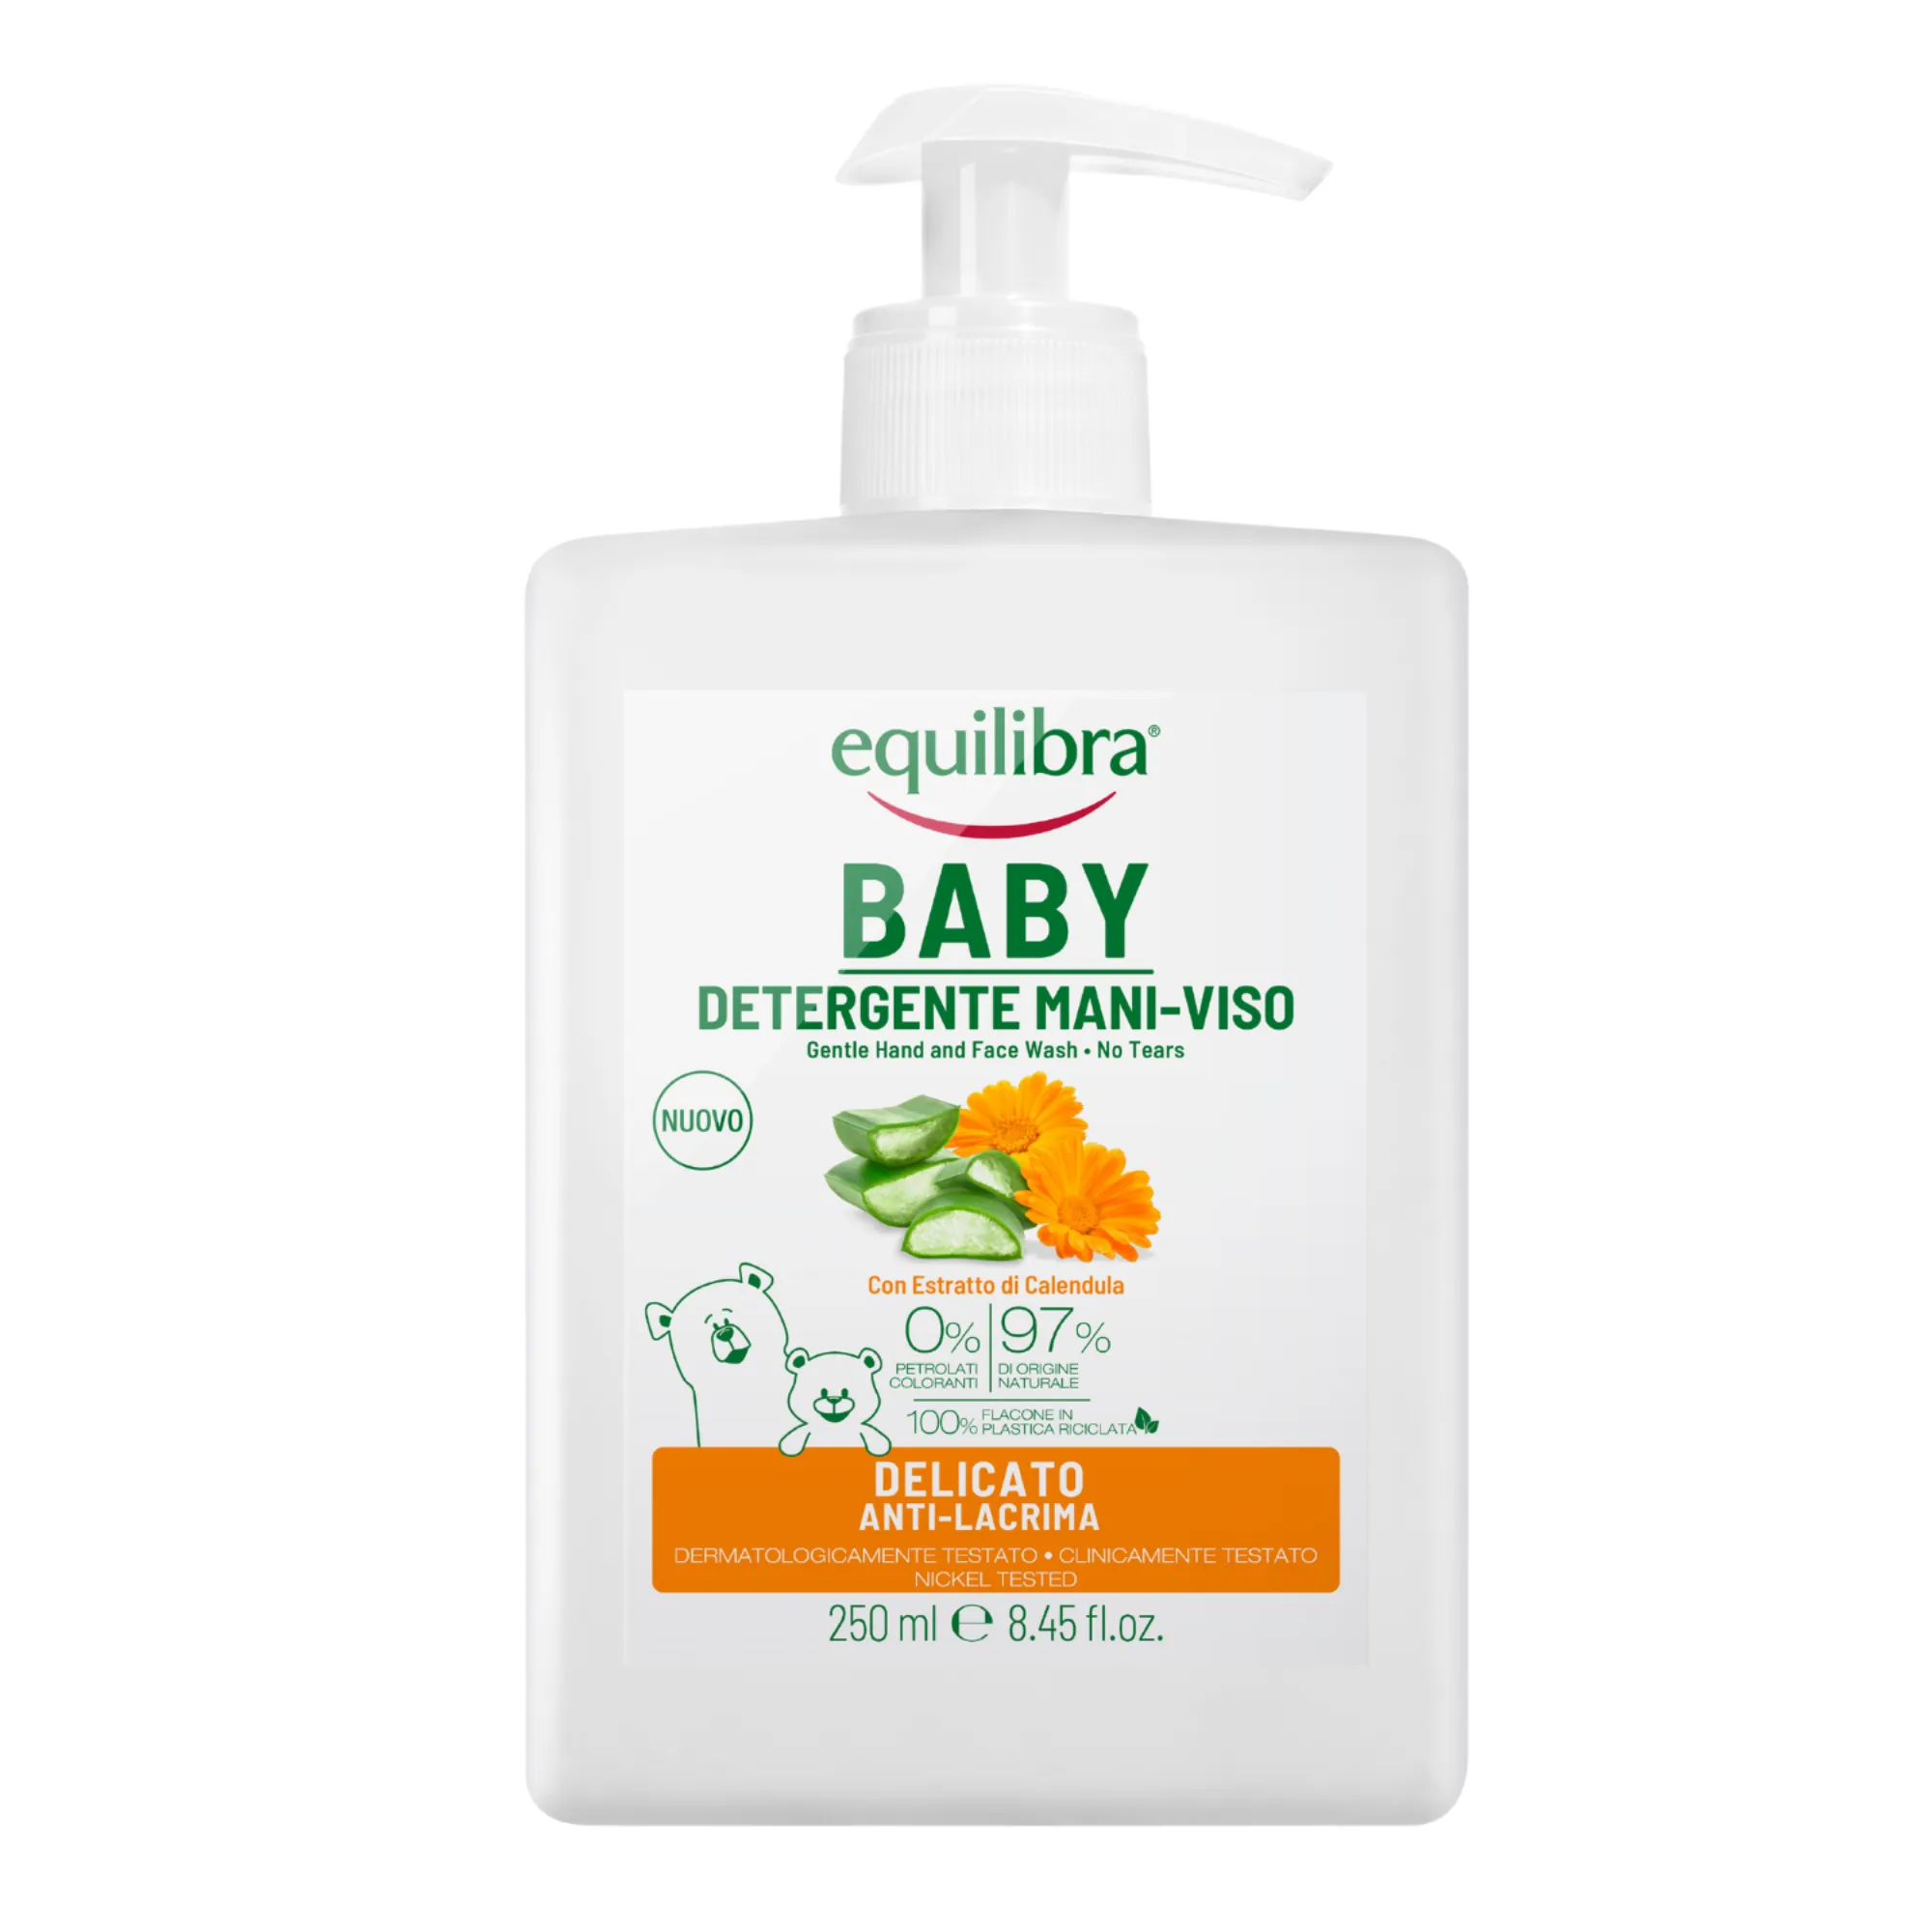 Equilibra Baby delikatny płyn do mycia rąk i twarzy dla dzieci, 250 ml